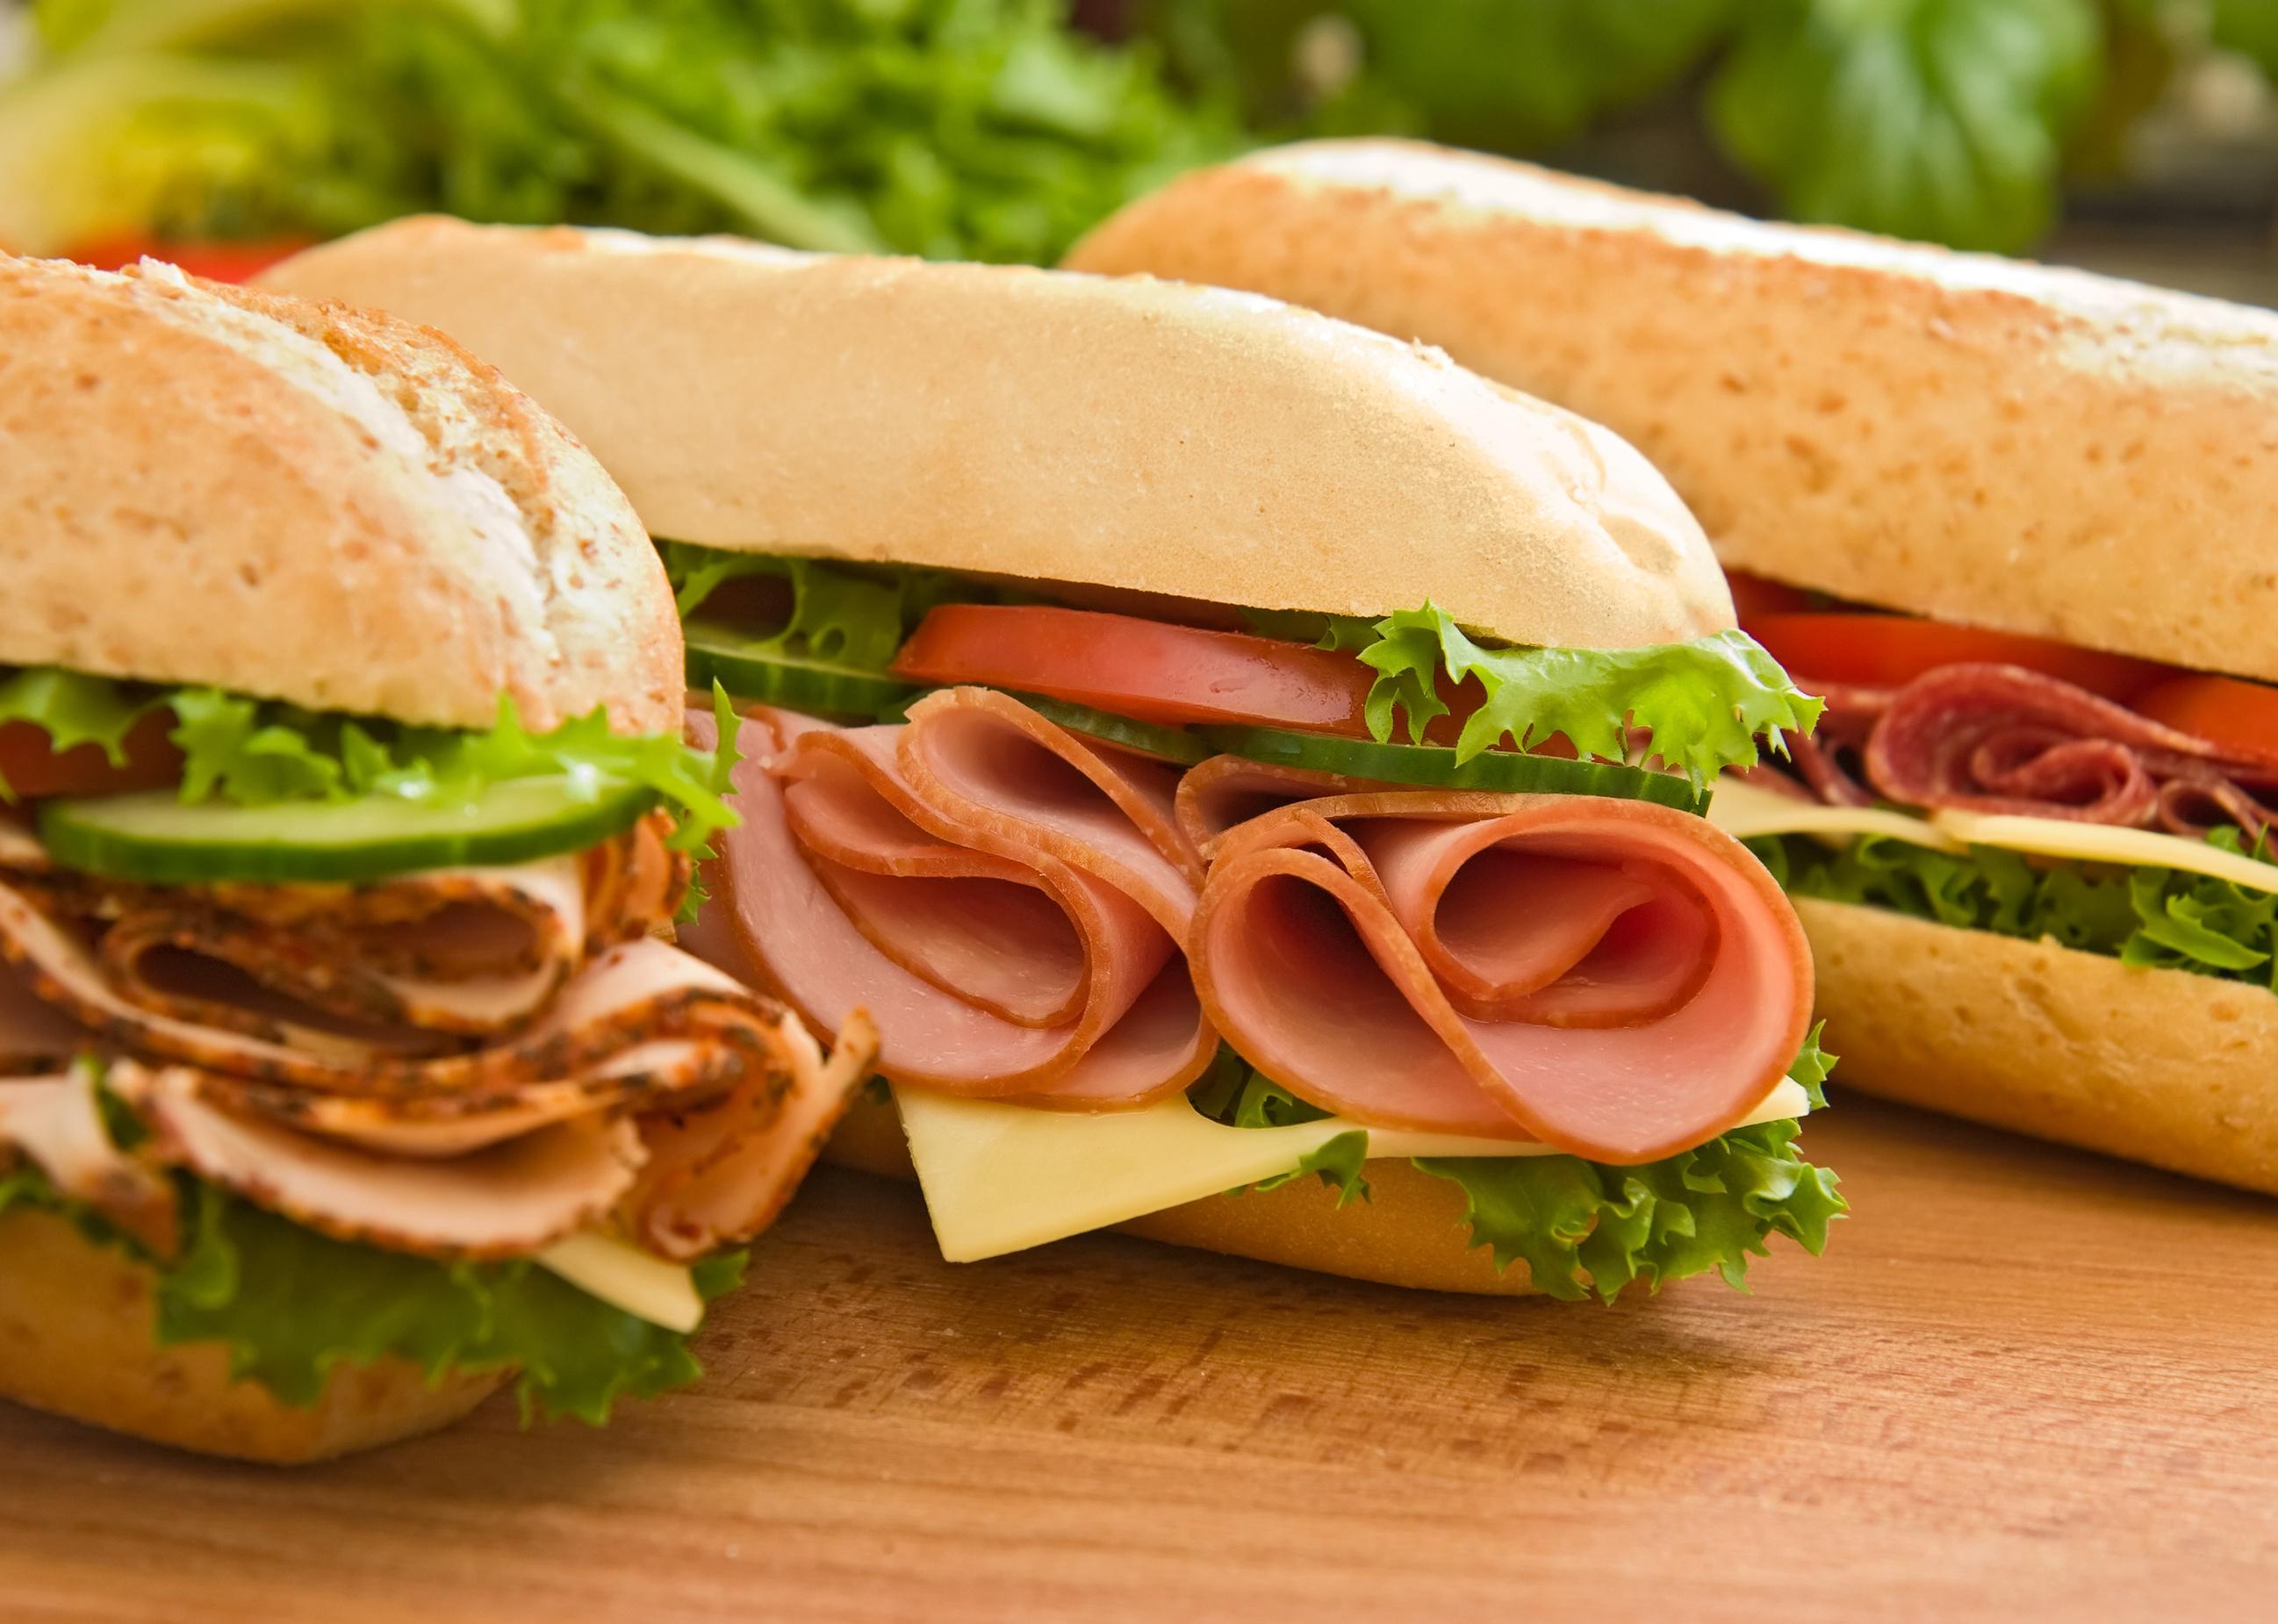 Three fresh sandwiches on a cutting board.